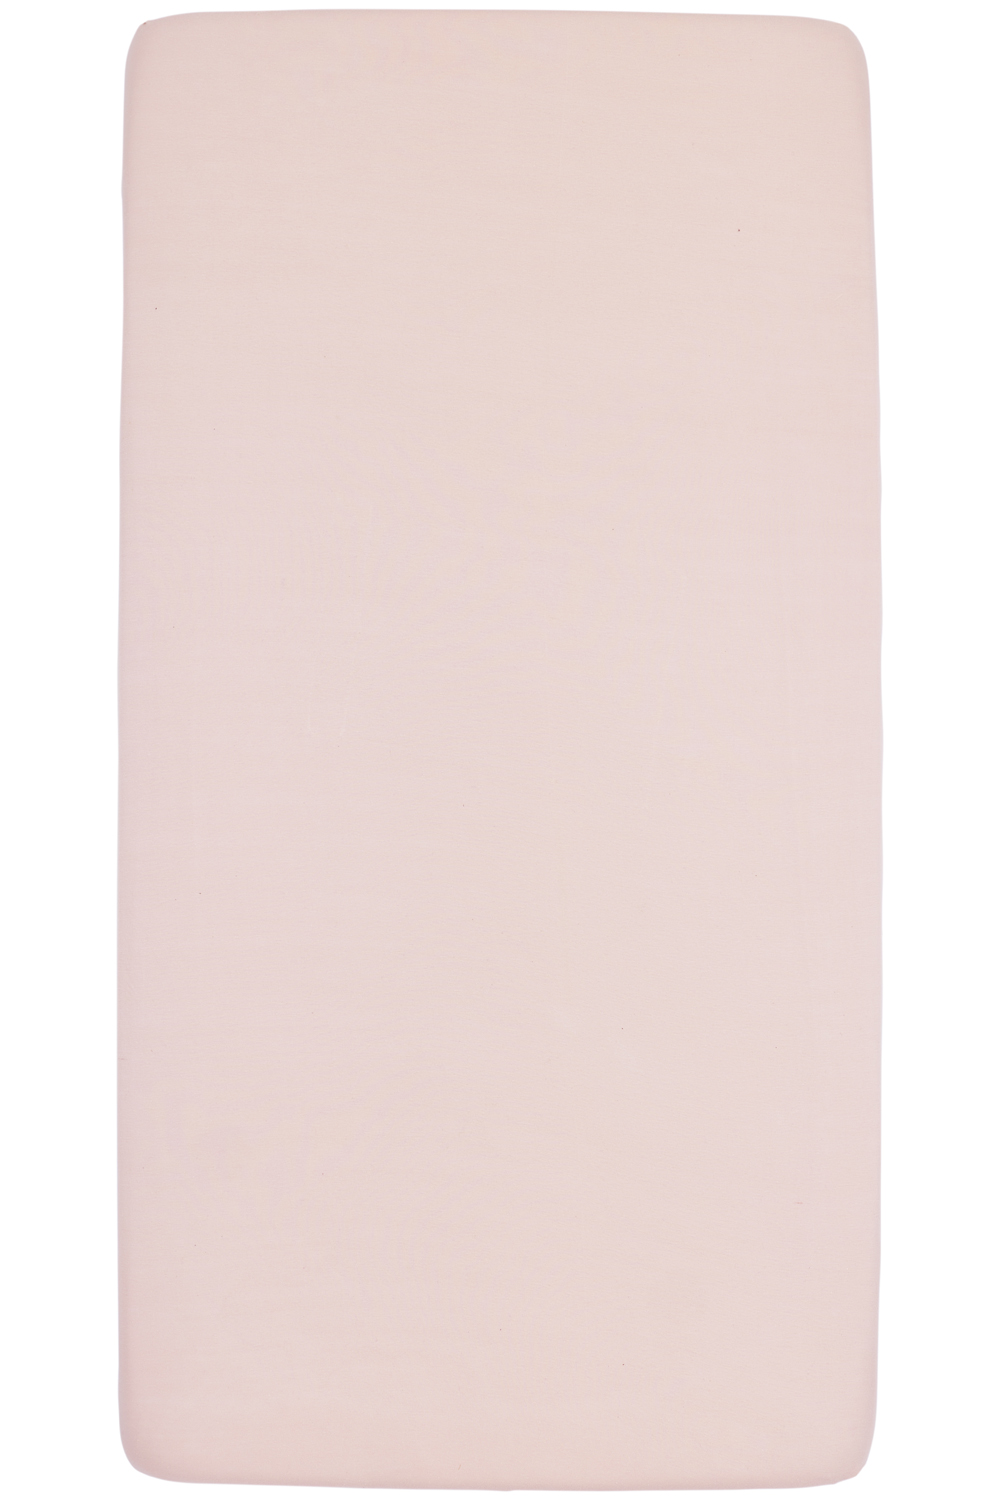 Spannbettlaken Juniorbett Uni - soft pink - 70x140/150cm